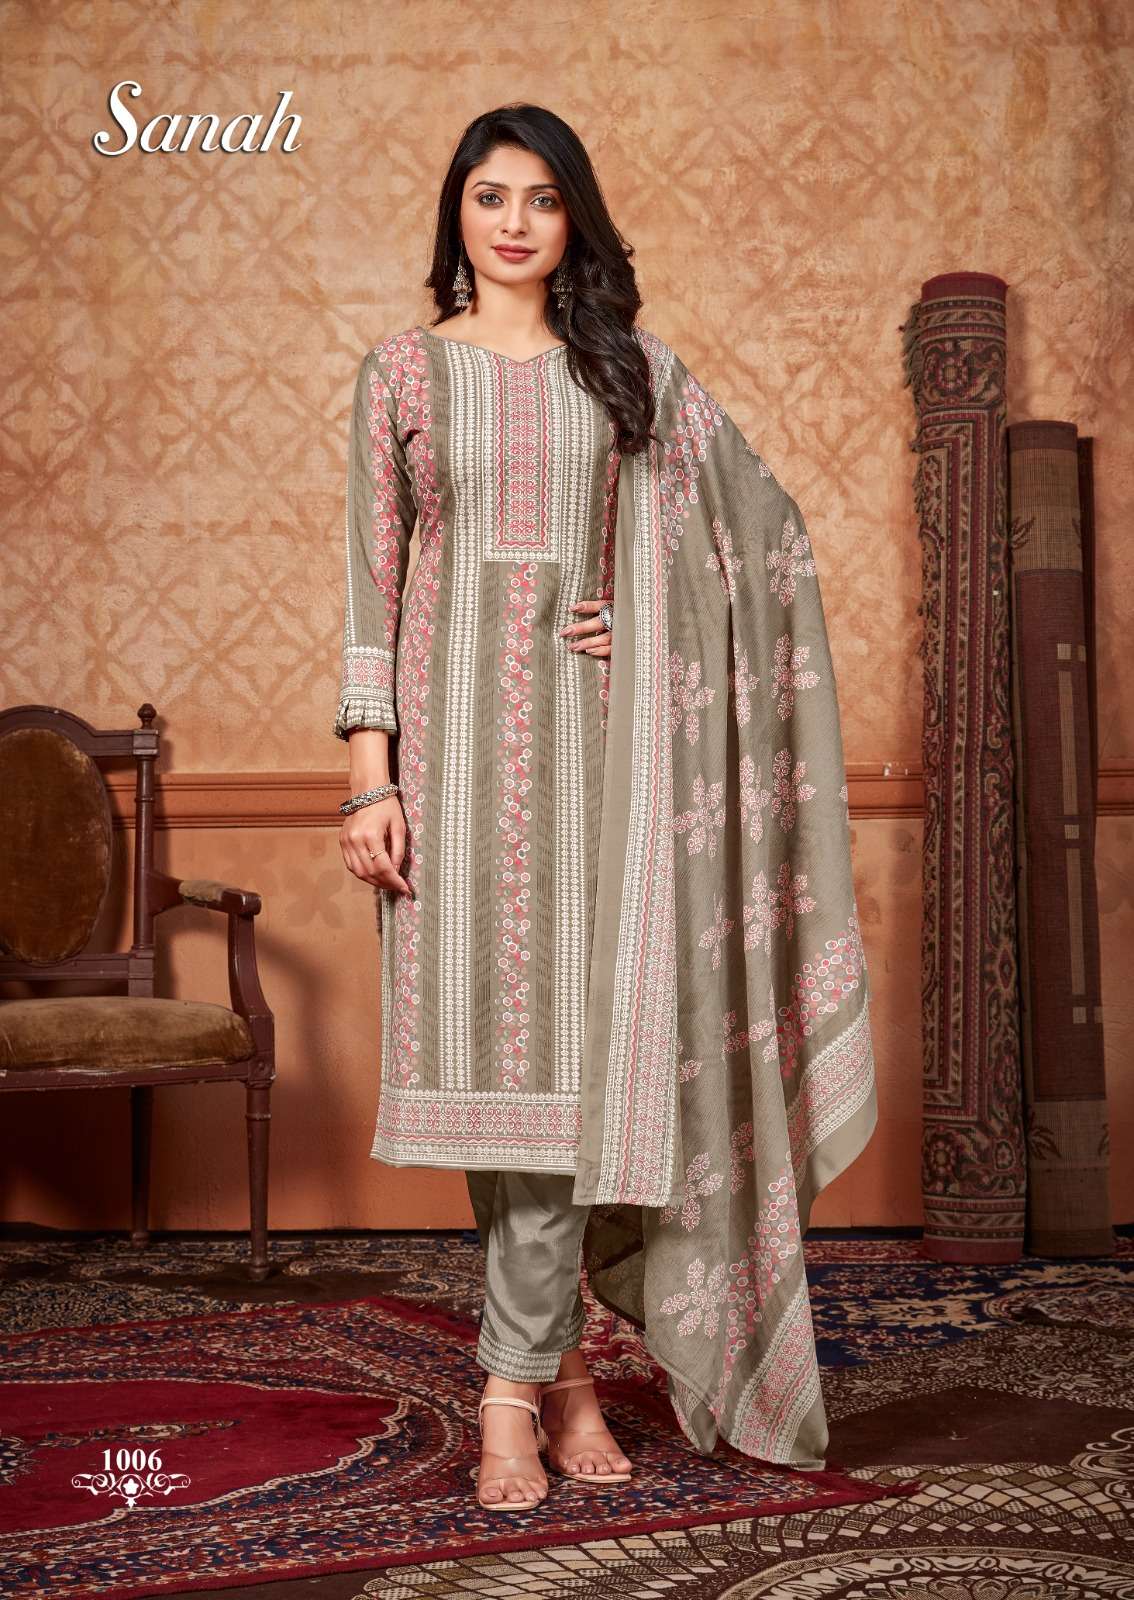 skt suits sanah 1001-1012 series unstich designer dress material catalogue online market surat 